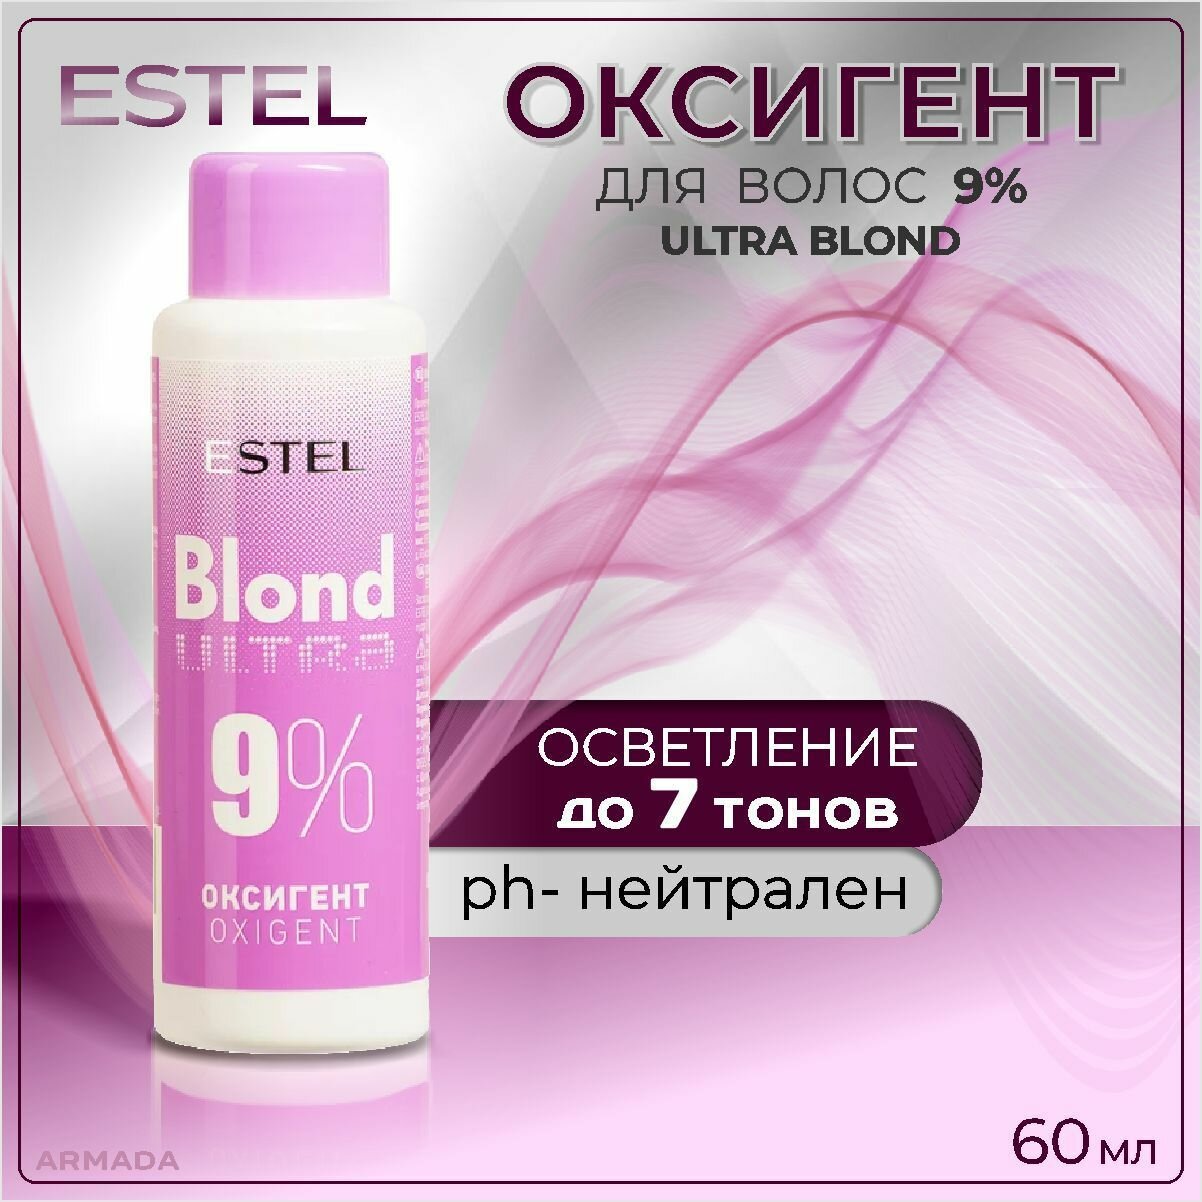 Оксигент для волос Estel Ultra Blond 9% - фото №16